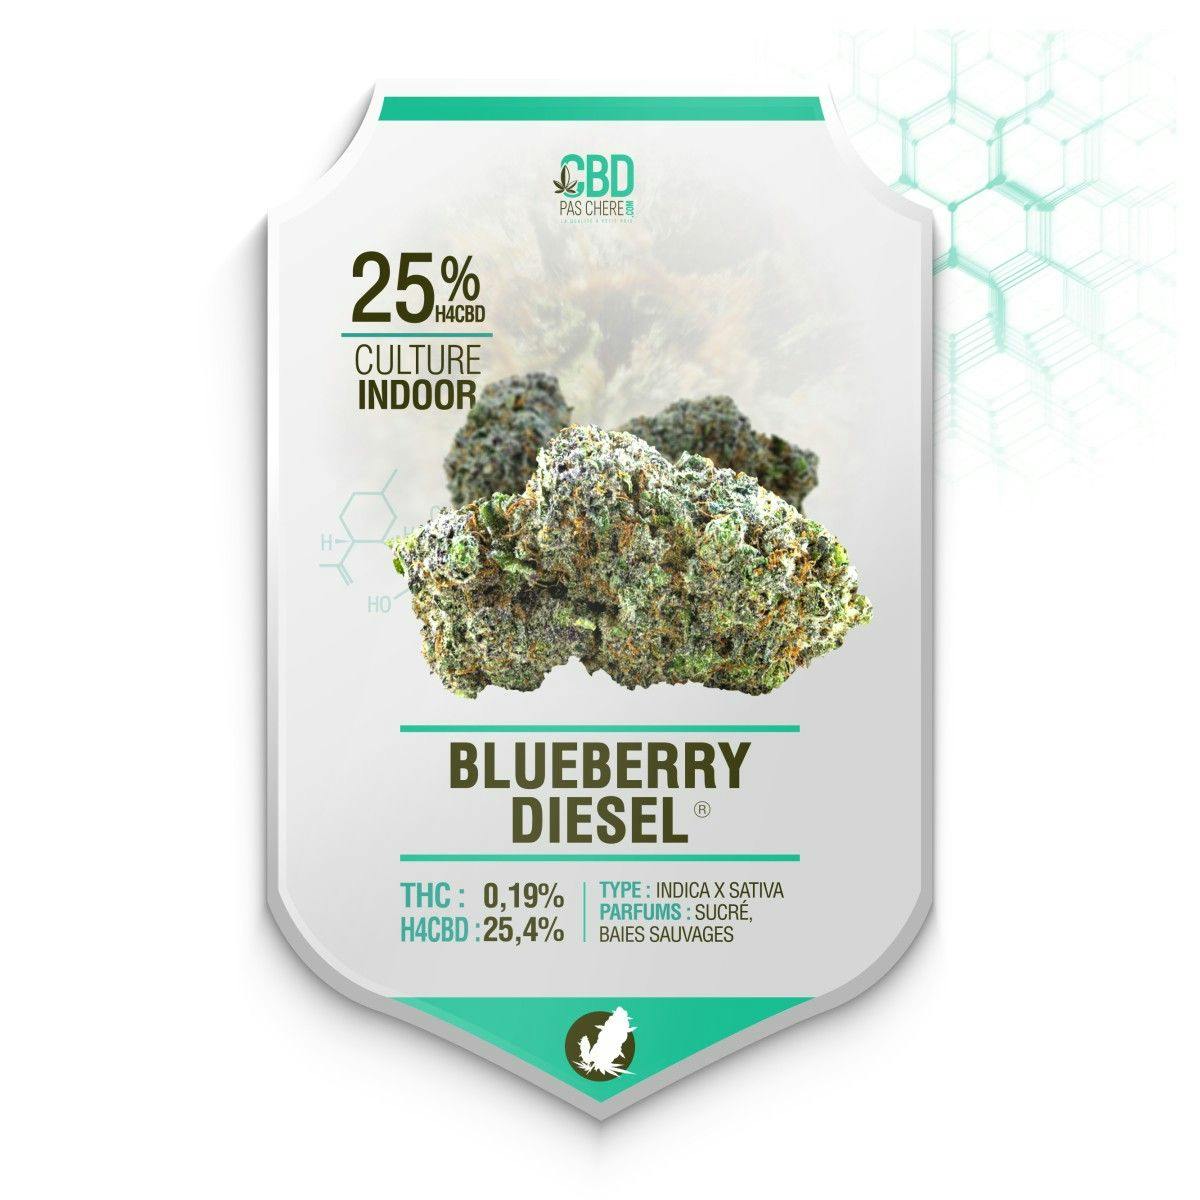 Blueberry Diesel H4CBD 25.4% - Cbdpaschere